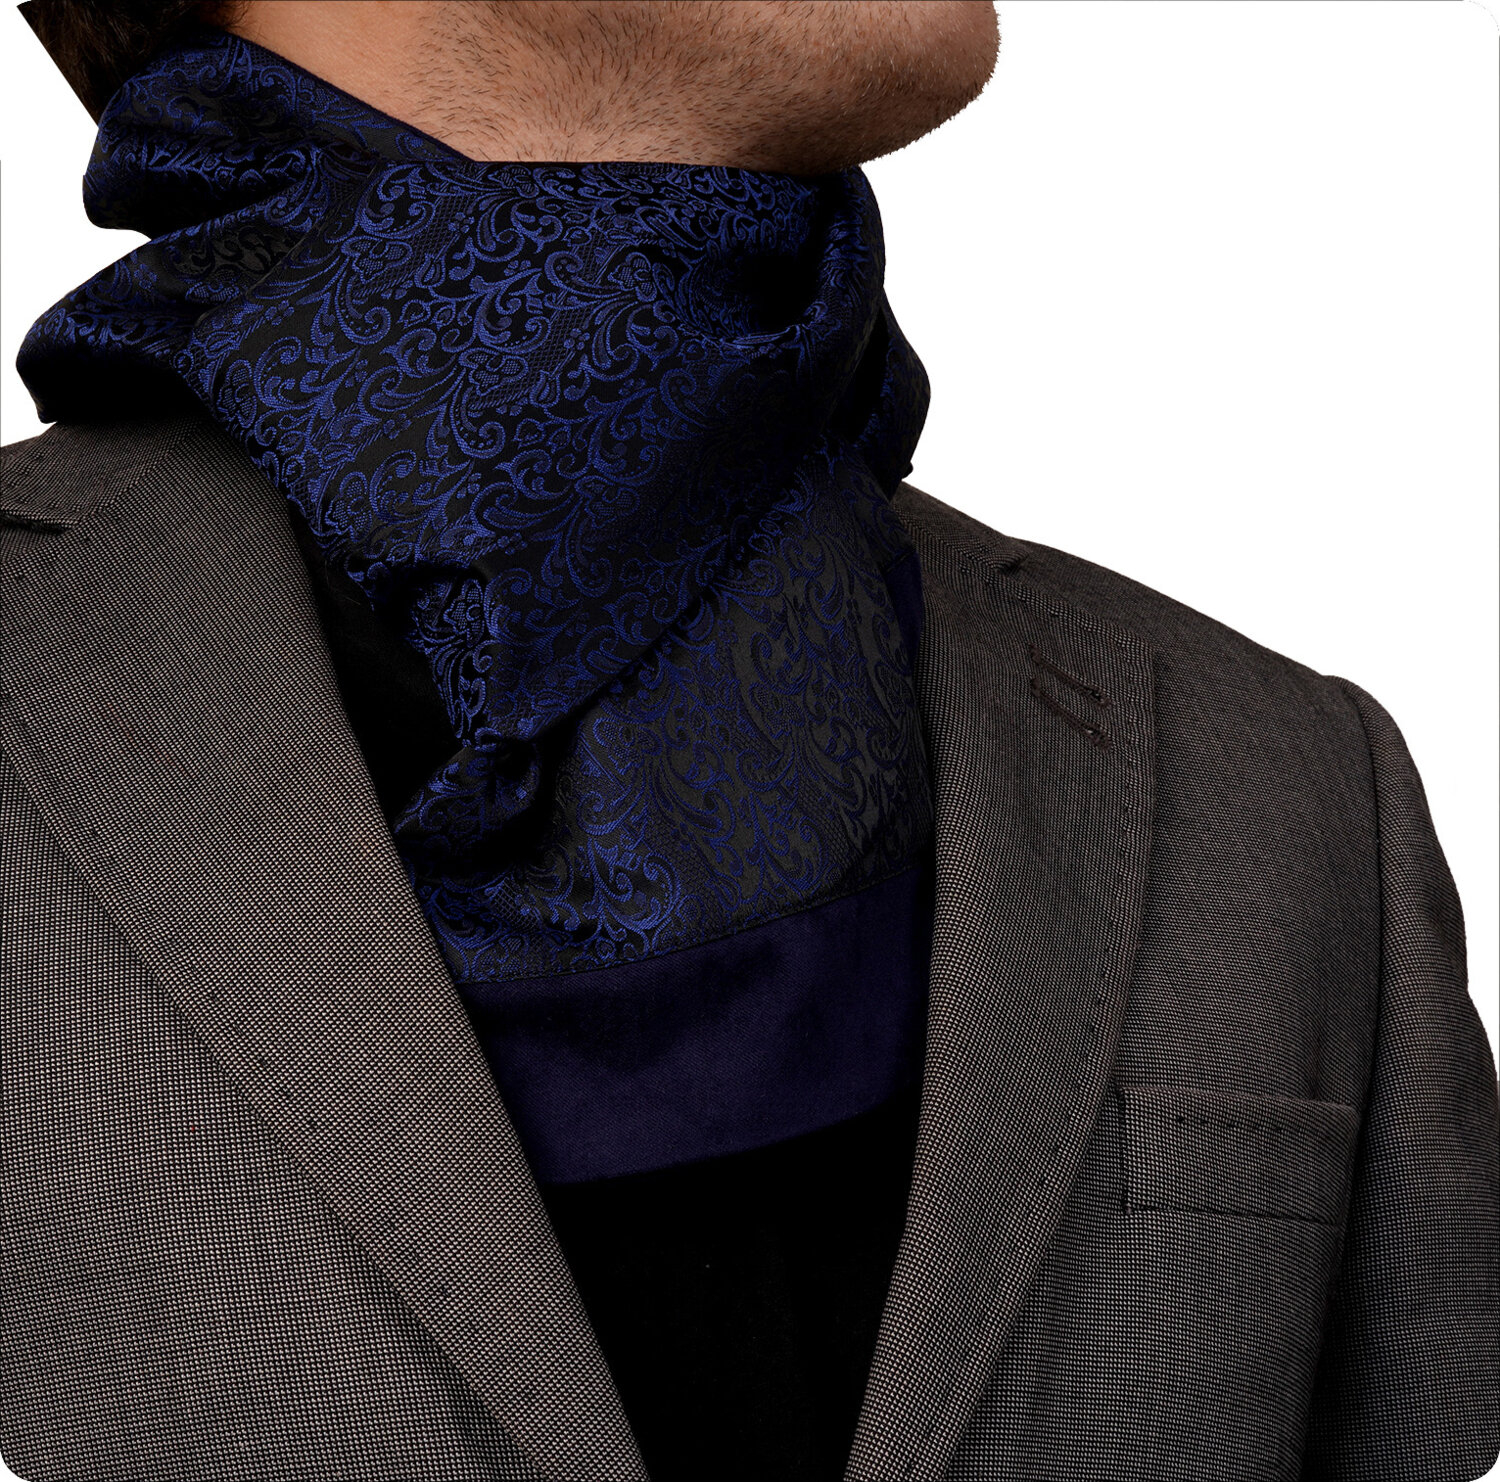 Эксклюзивный сине-черный шарф-палантин Exve с рисунком пейсли, выполненный в технике жаккард, двусторонний.